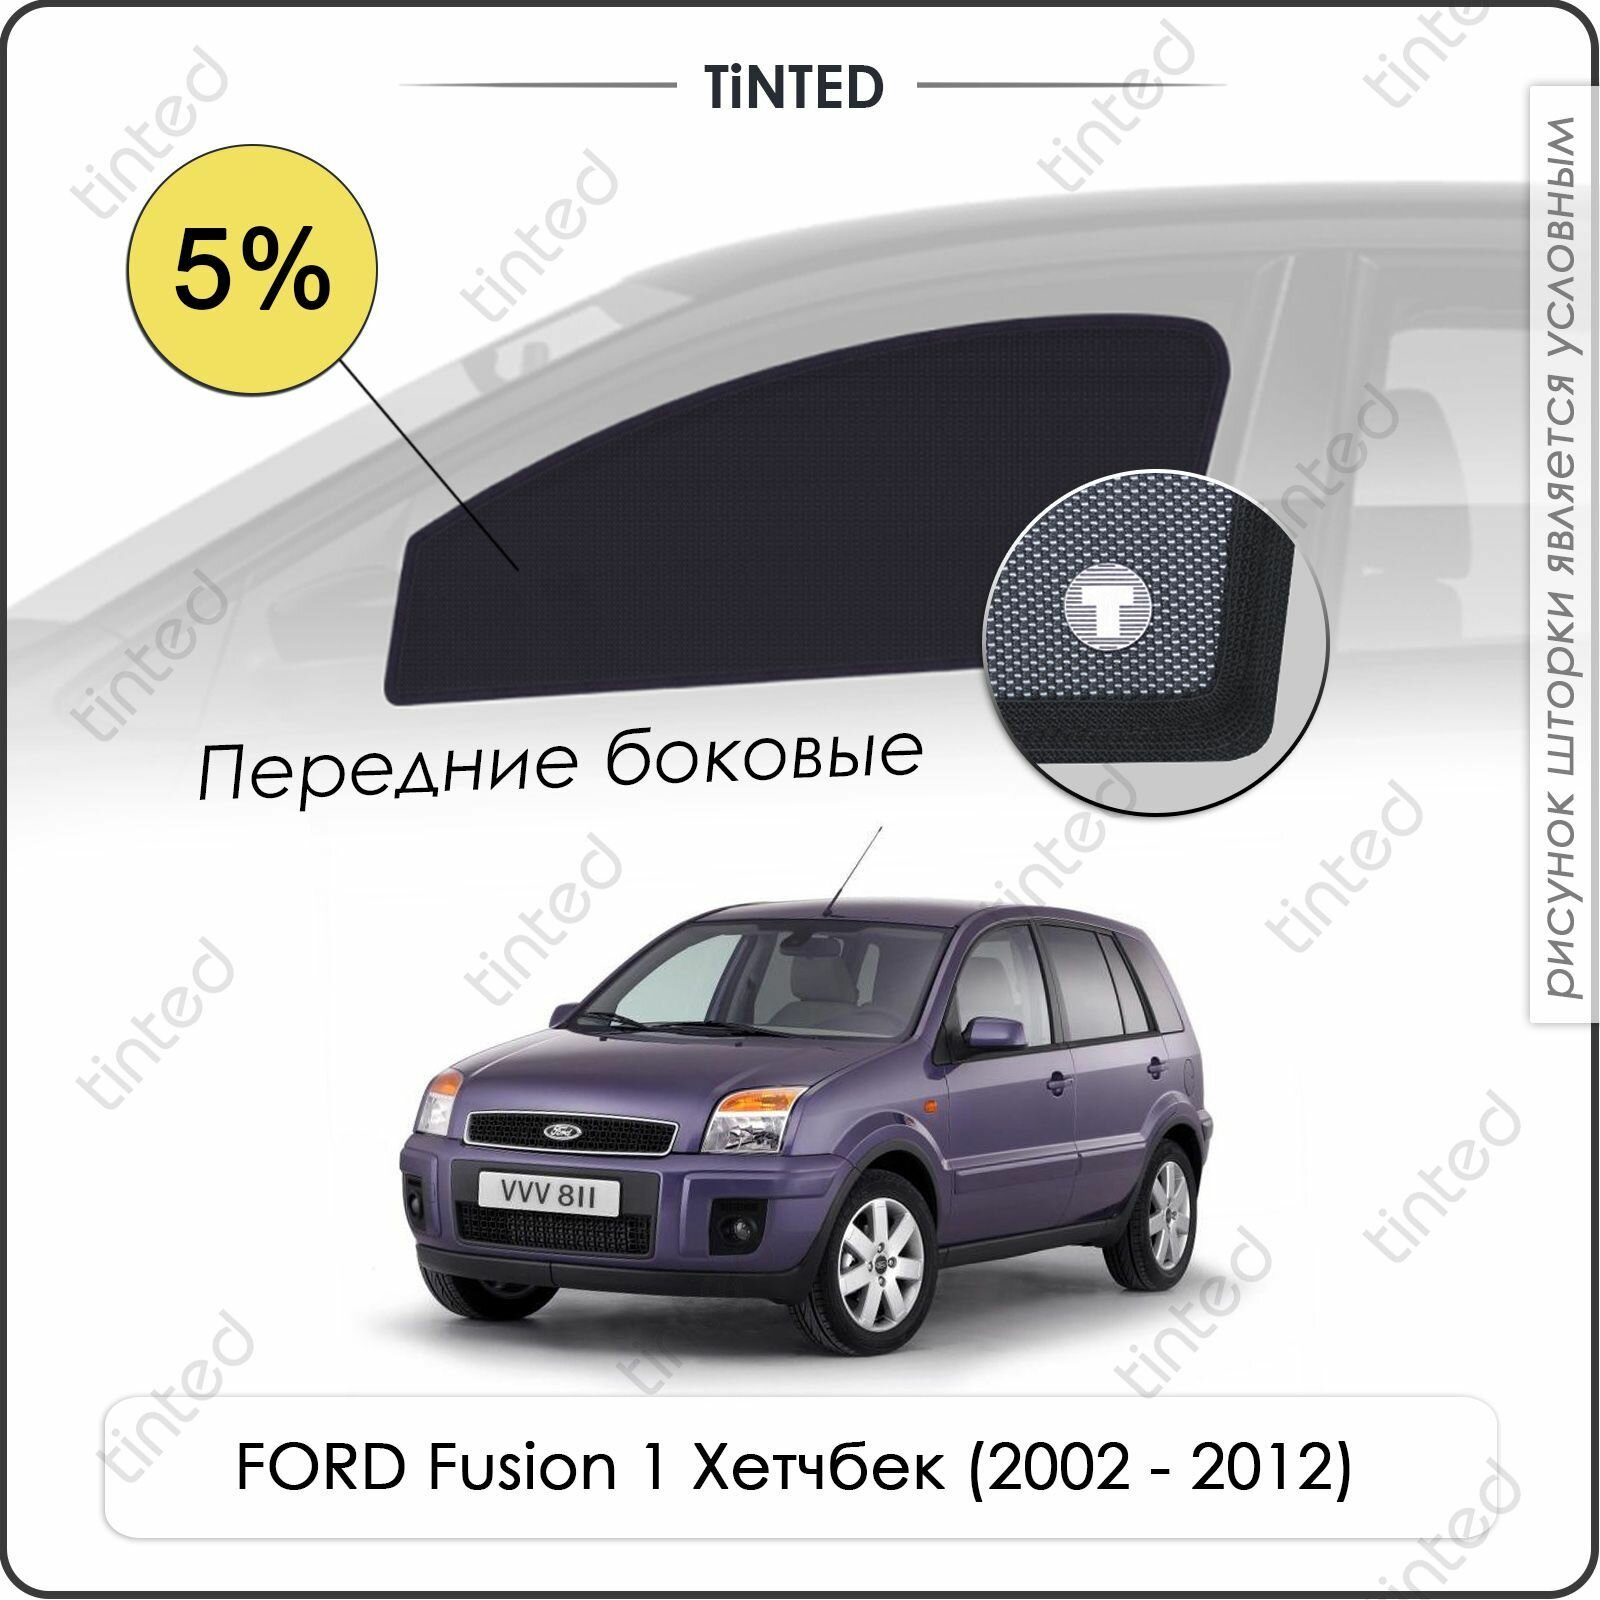 Шторки на автомобиль солнцезащитные FORD Fusion 1 Хетчбек 5дв. (2002 - 2012) на задние двери 5% сетки от солнца в машину форд фьюжен Каркасные автошторки Premium